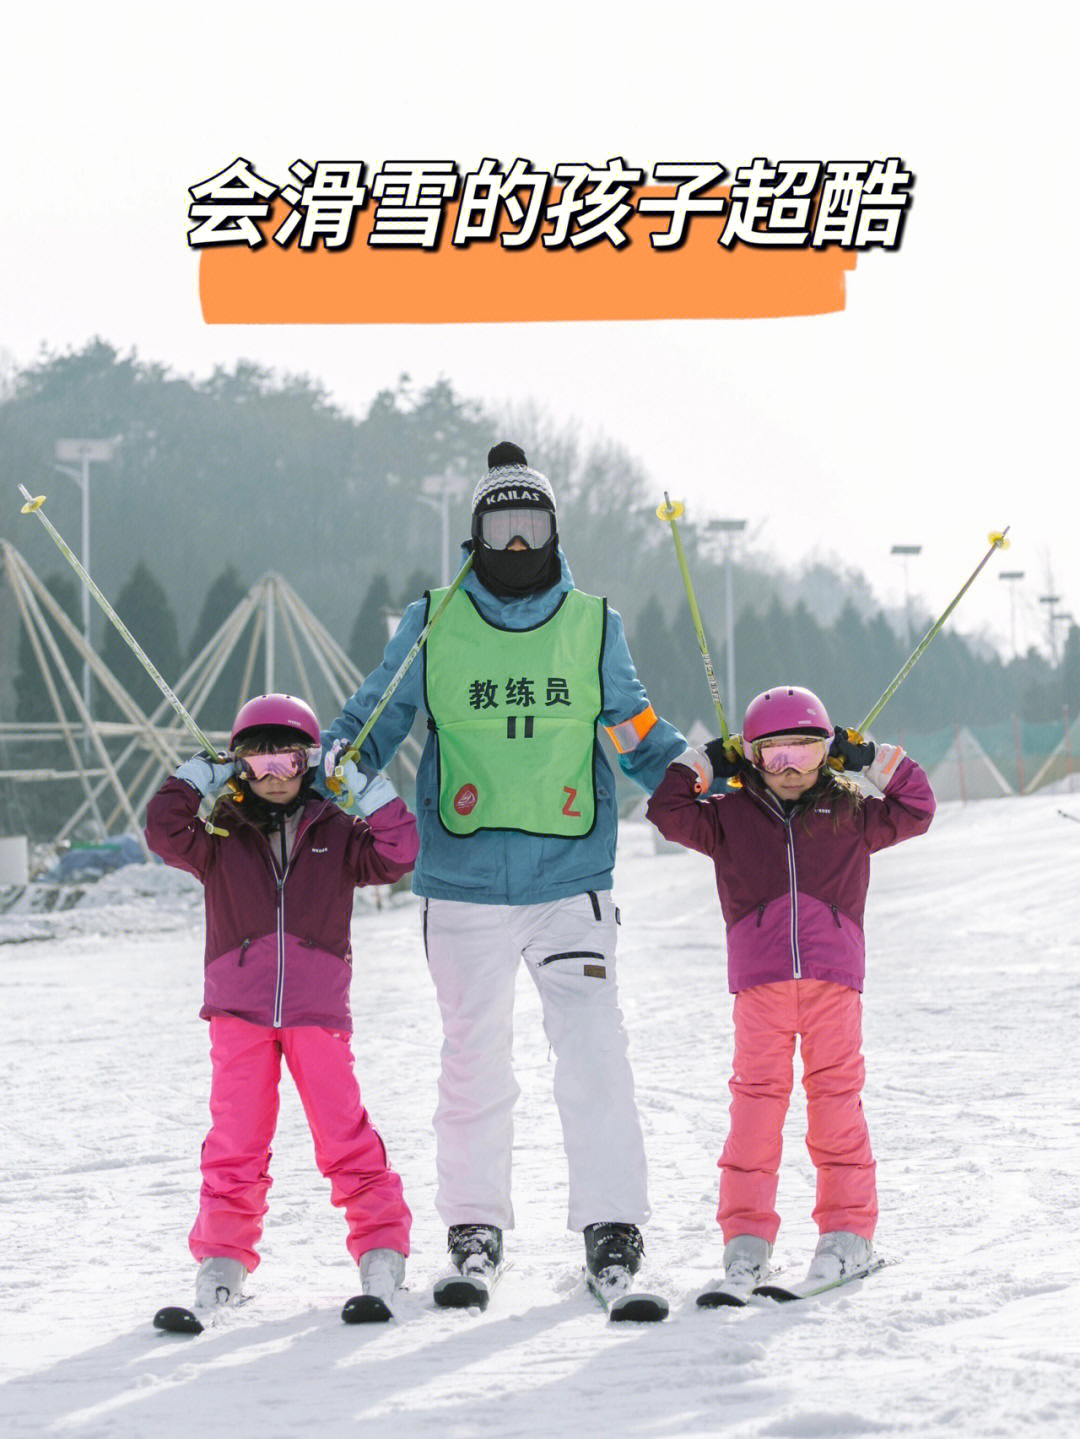 大连儿童滑雪这个地方让孩子畅享滑雪乐趣